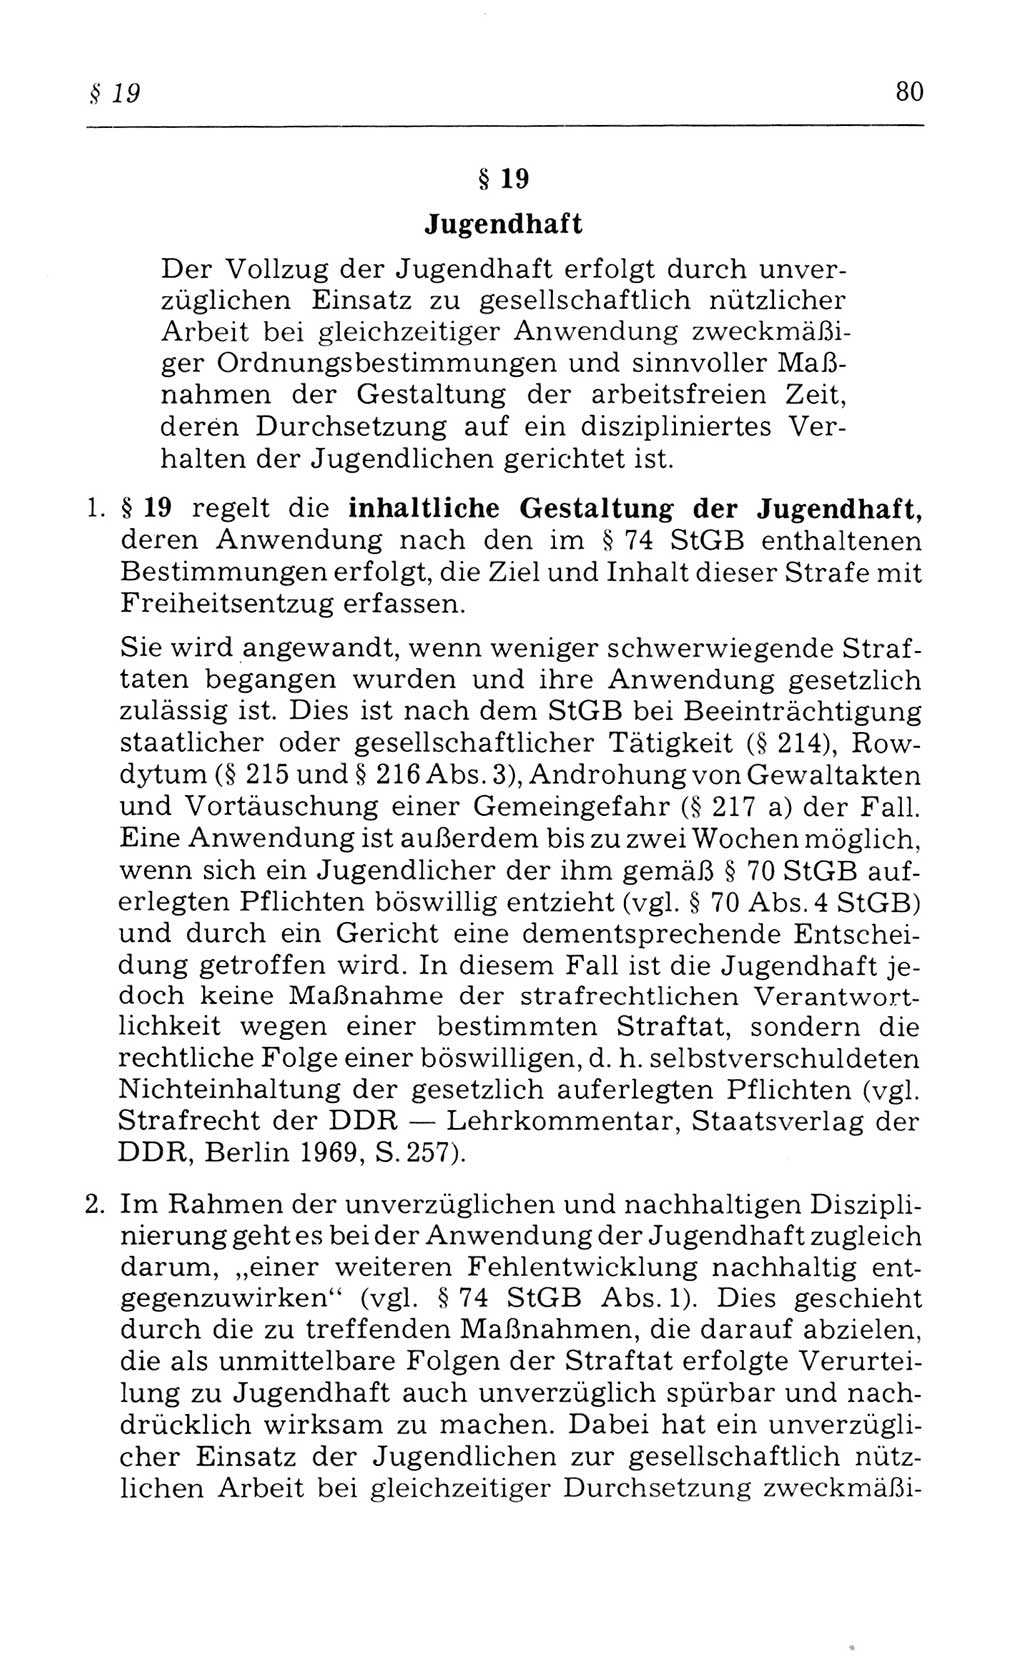 Kommentar zum Strafvollzugsgesetz [(StVG) Deutsche Demokratische Republik (DDR)] 1980, Seite 80 (Komm. StVG DDR 1980, S. 80)